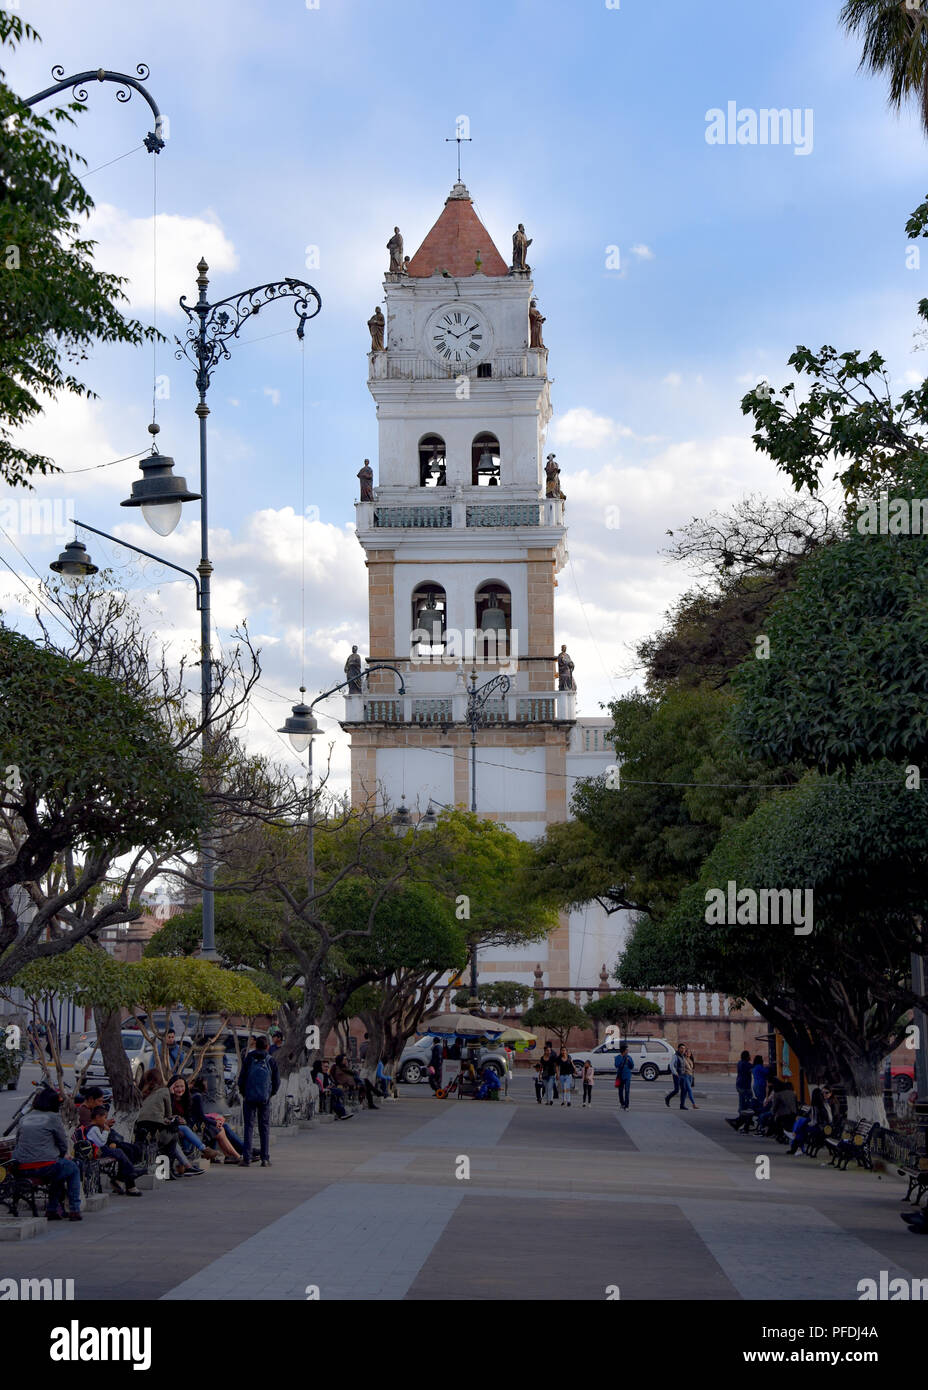 La Catedral Metropolitana de la ciudad de Sucre, en la Plaza 25 de mayo plaza en Sucre, Bolivia Foto de stock